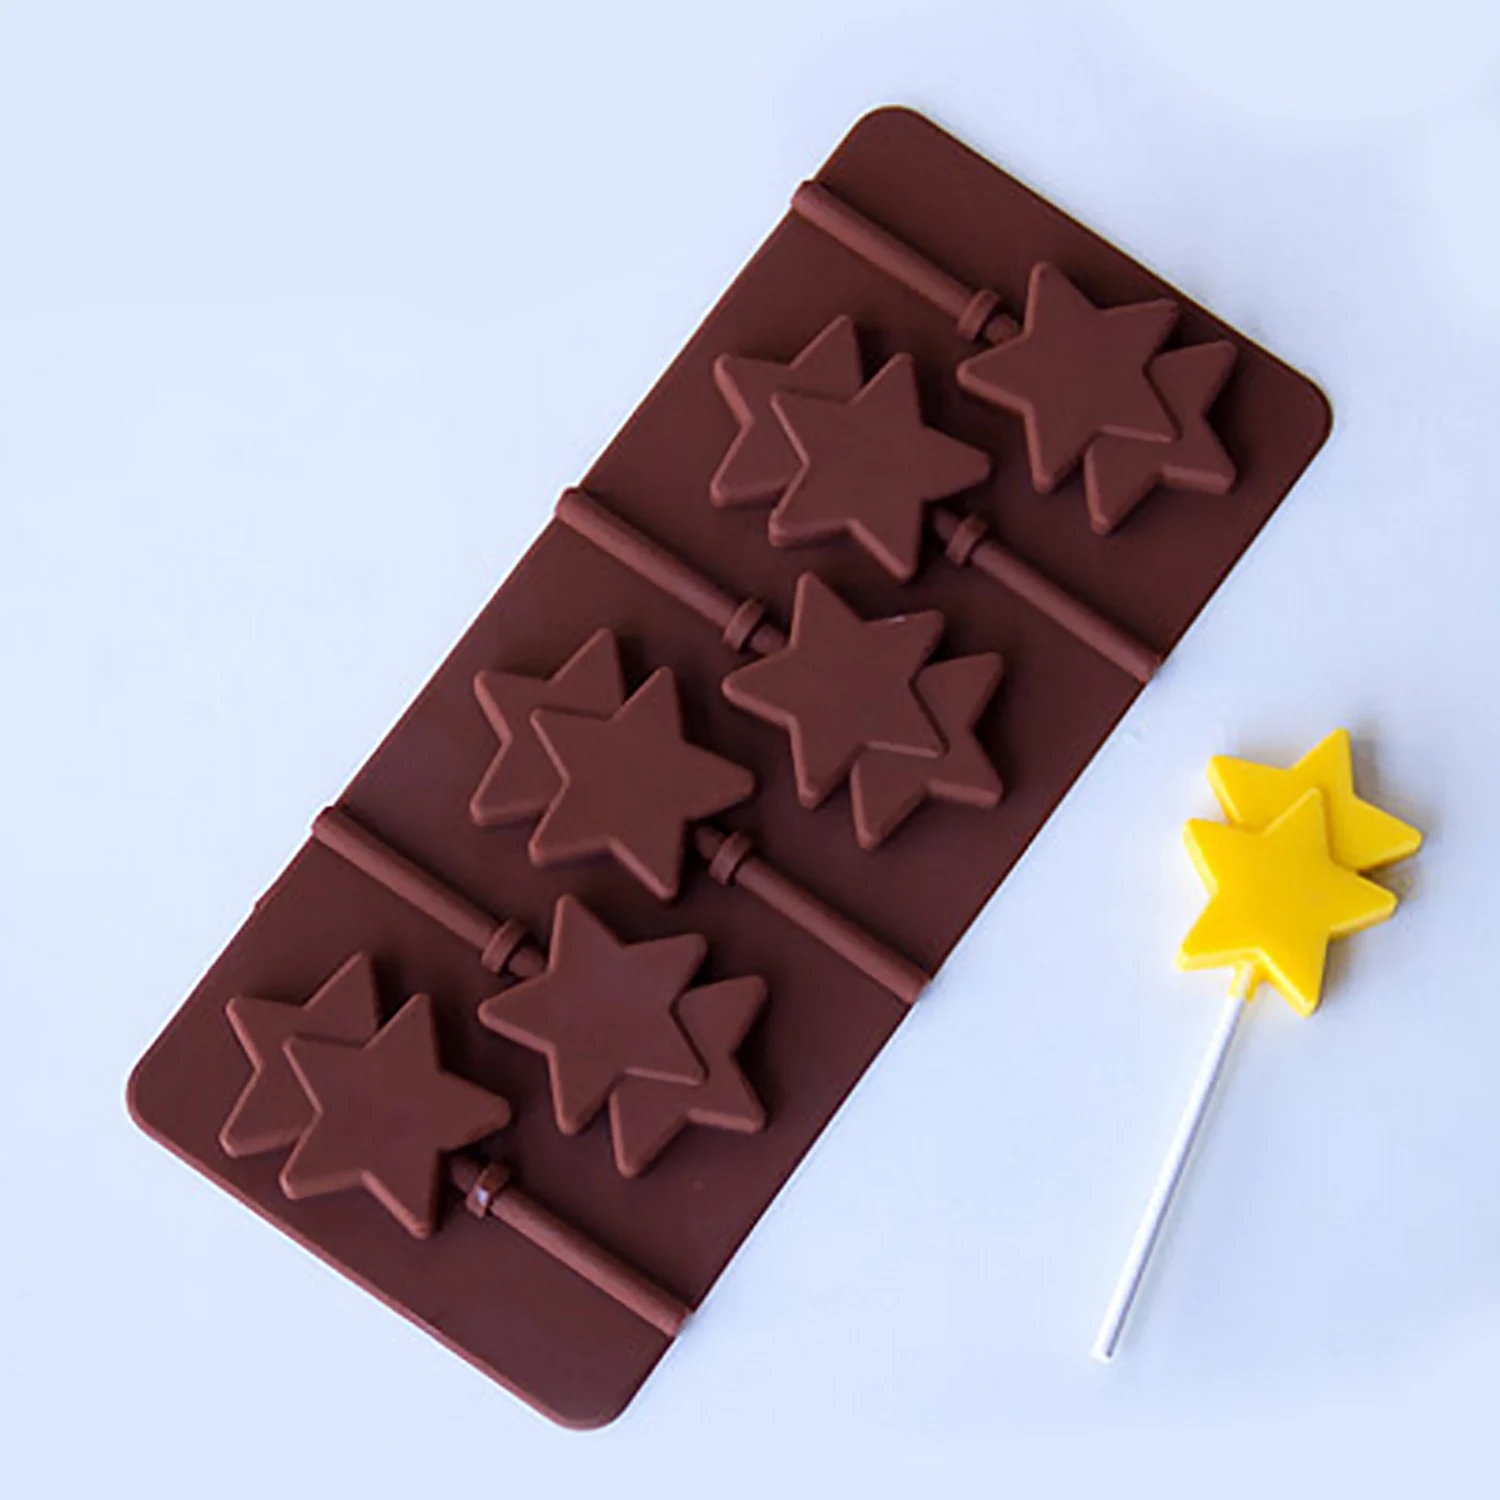 Behogar 6 отверстий силиконовая форма для леденцов форма для пирожного печенье конфеты принадлежность для изготовления шоколадных форм формы для выпечки лоток инструменты для кухни дома